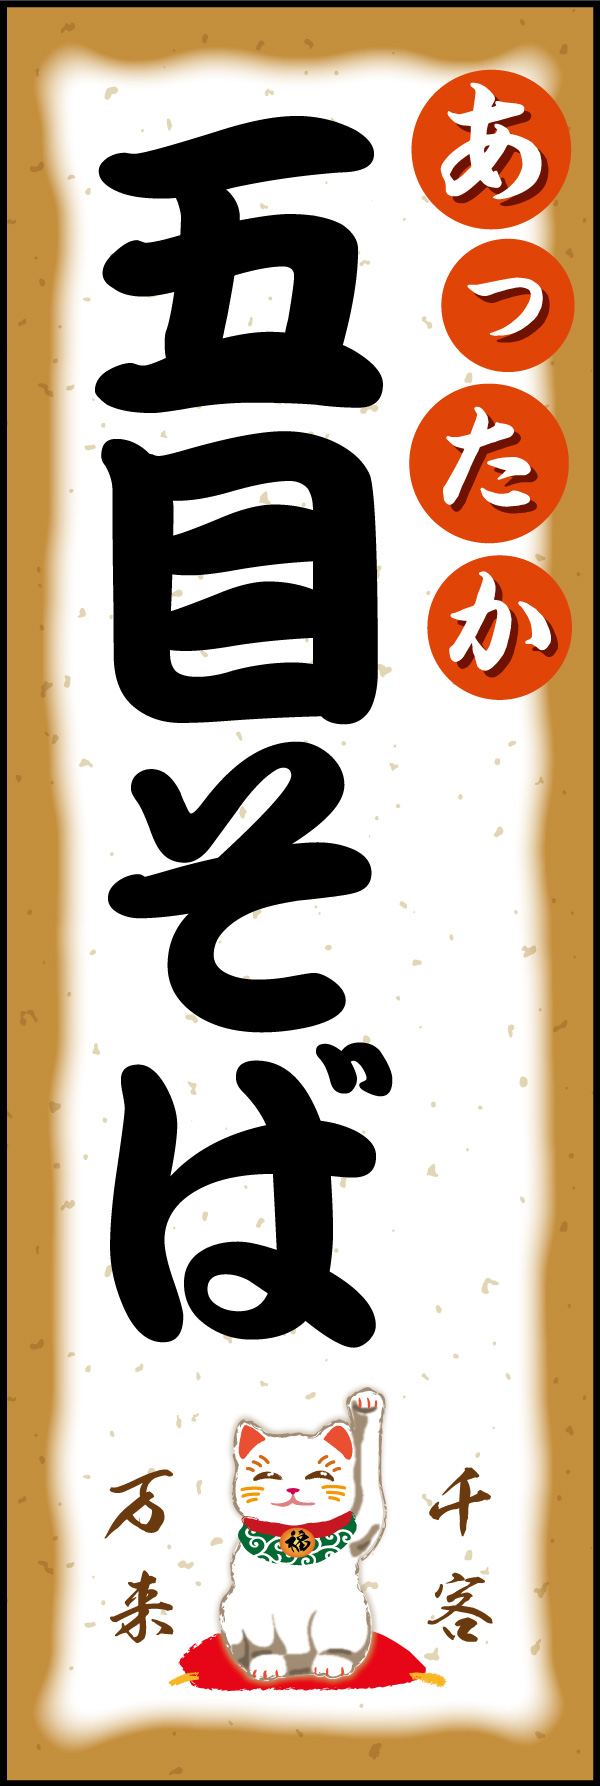 五目そば 02 「札幌ラーメン」ののぼりです。札幌のこってり味噌ラーメンをイメージしてデザインしました。(Y.M)